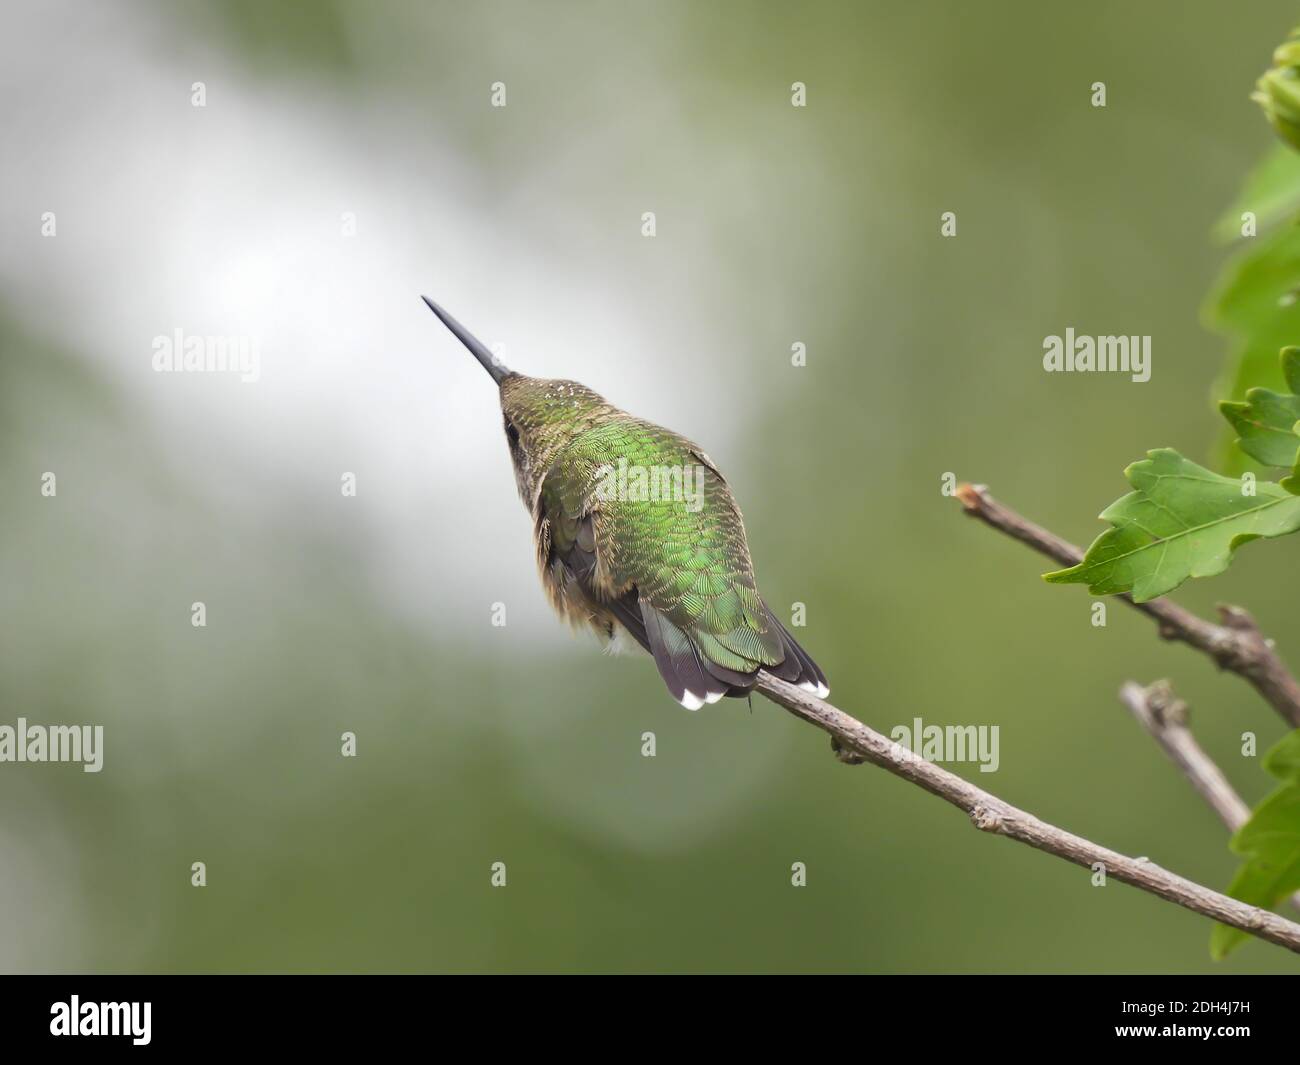 Rubinkehlige Kolibri isoliert von hinten gesehen auf einem thront Bush Stem Stretching mit Schnabel zeigt nach oben in Einhorn-Position Stockfoto